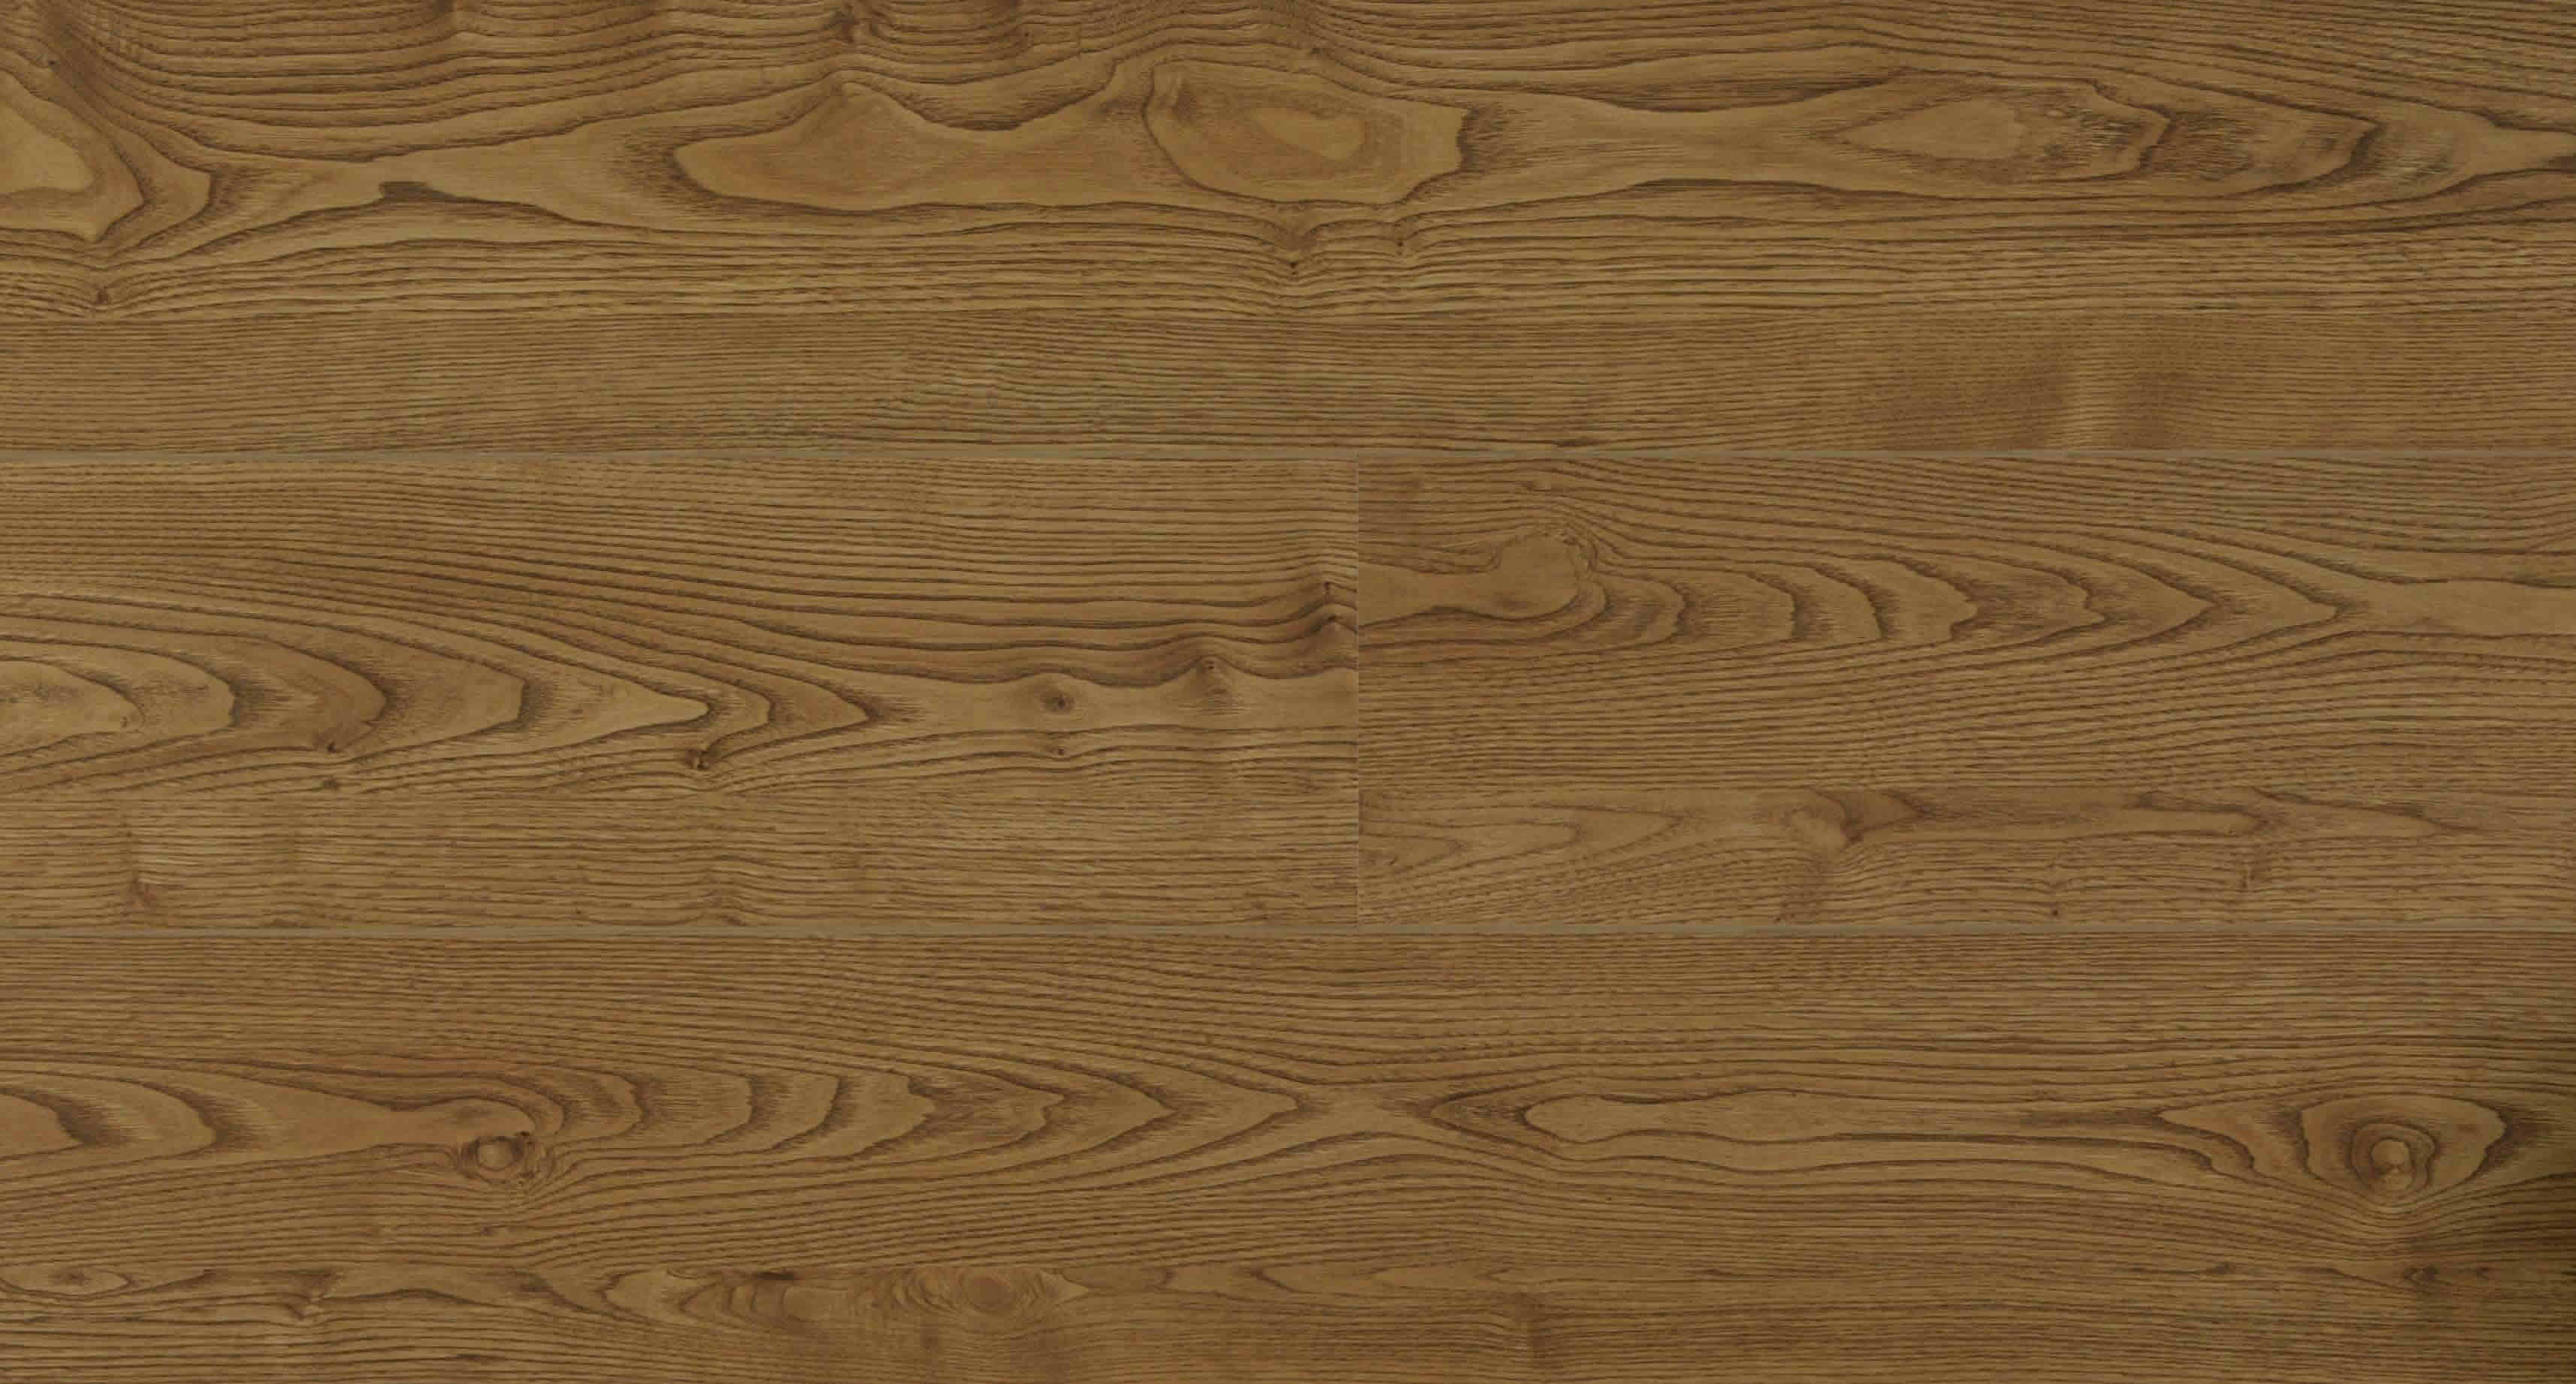 Текстура дерево, деревянная текстура скачать бесплатно, фото, download wood texture, wooden background